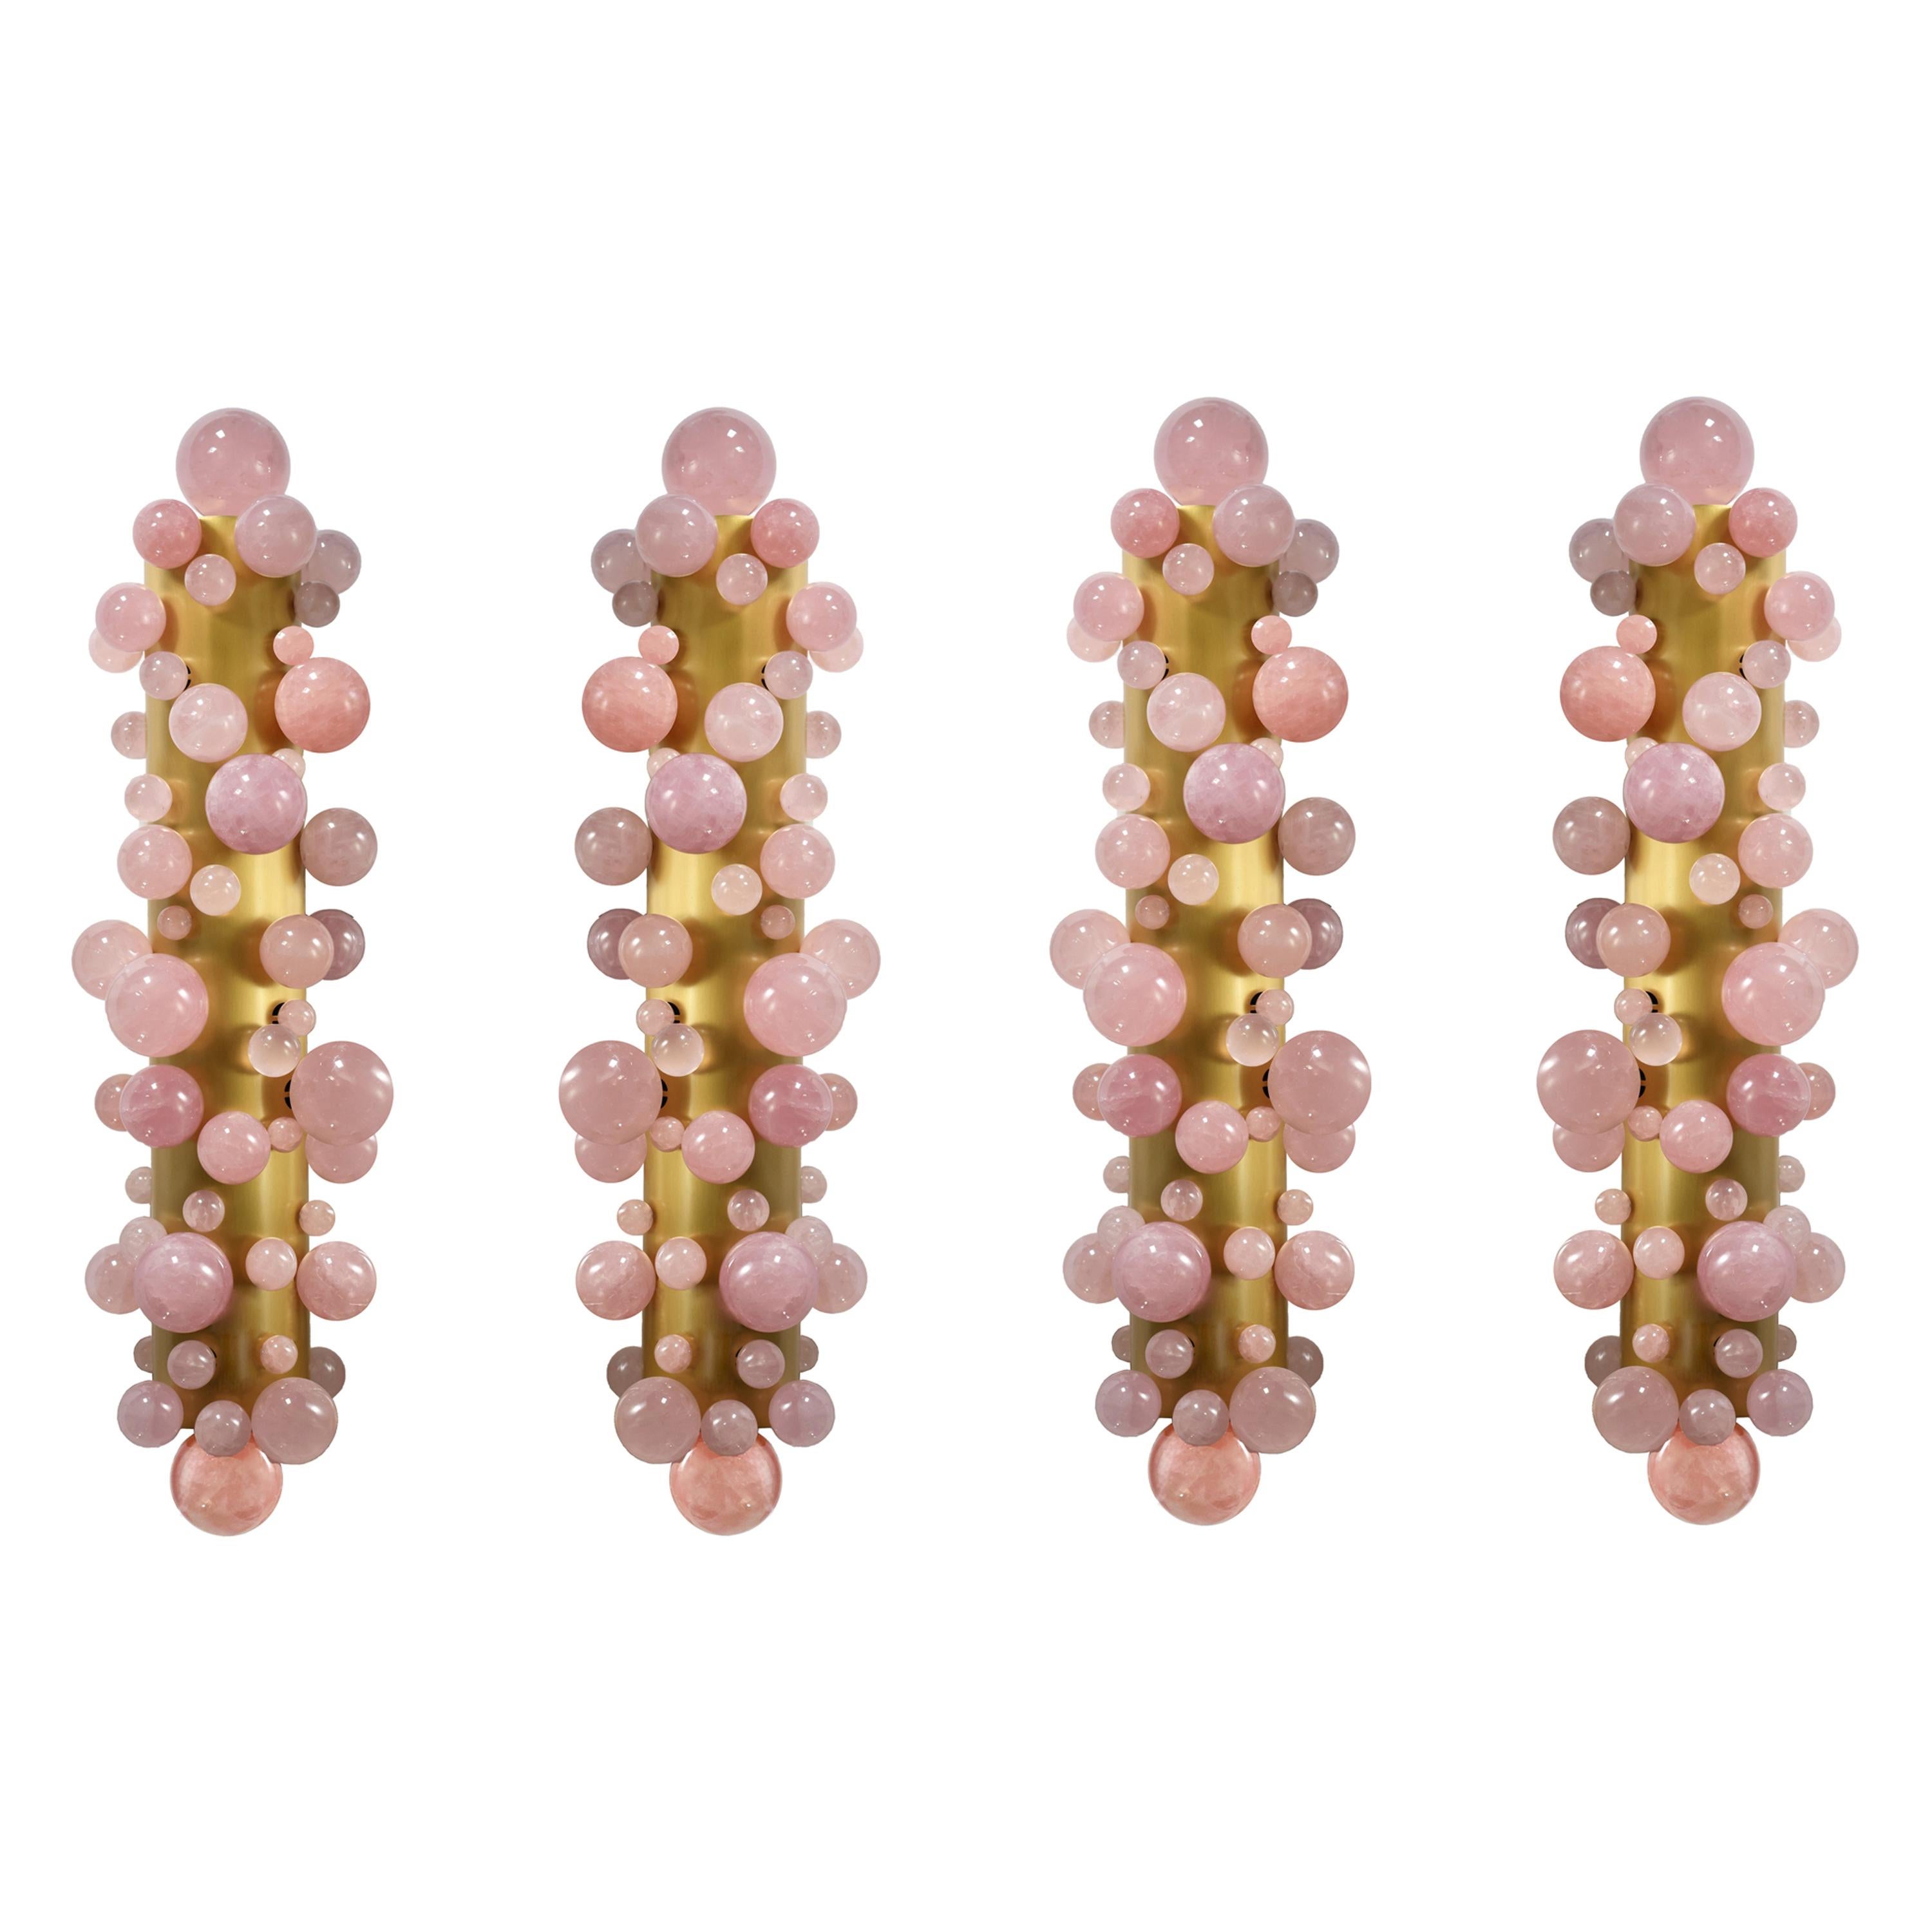 Group of Four Pink Quartz Bubble Sconces by Phoenix For Sale